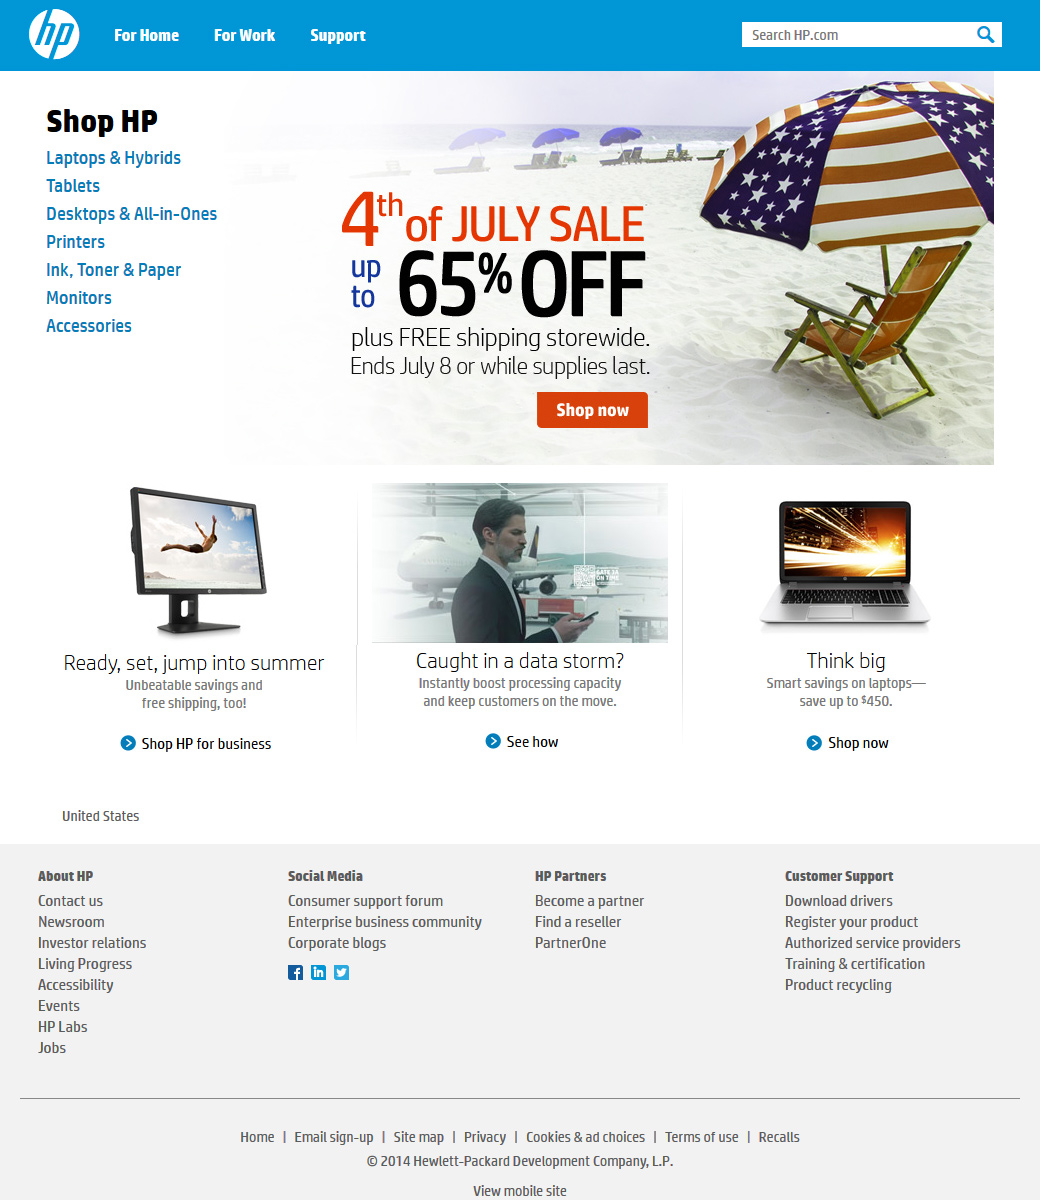 Hewlett Packard website in 2014